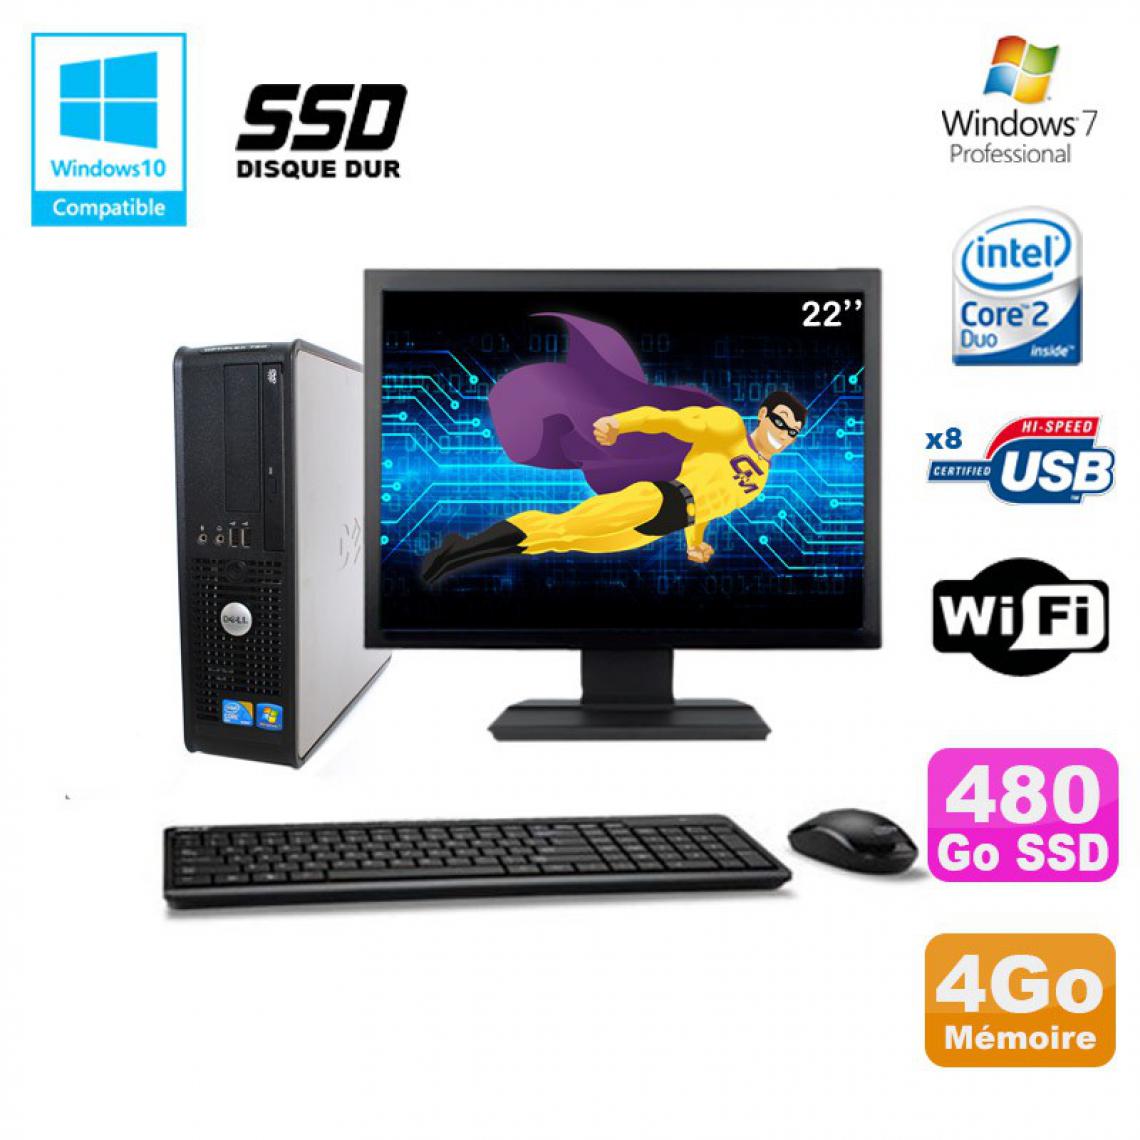 Dell - Lot PC DELL Optiplex 780 Sff E7500 2,93Ghz 4Go DDR3 480Go SSD WIFI W7 Pro + 22" - PC Fixe